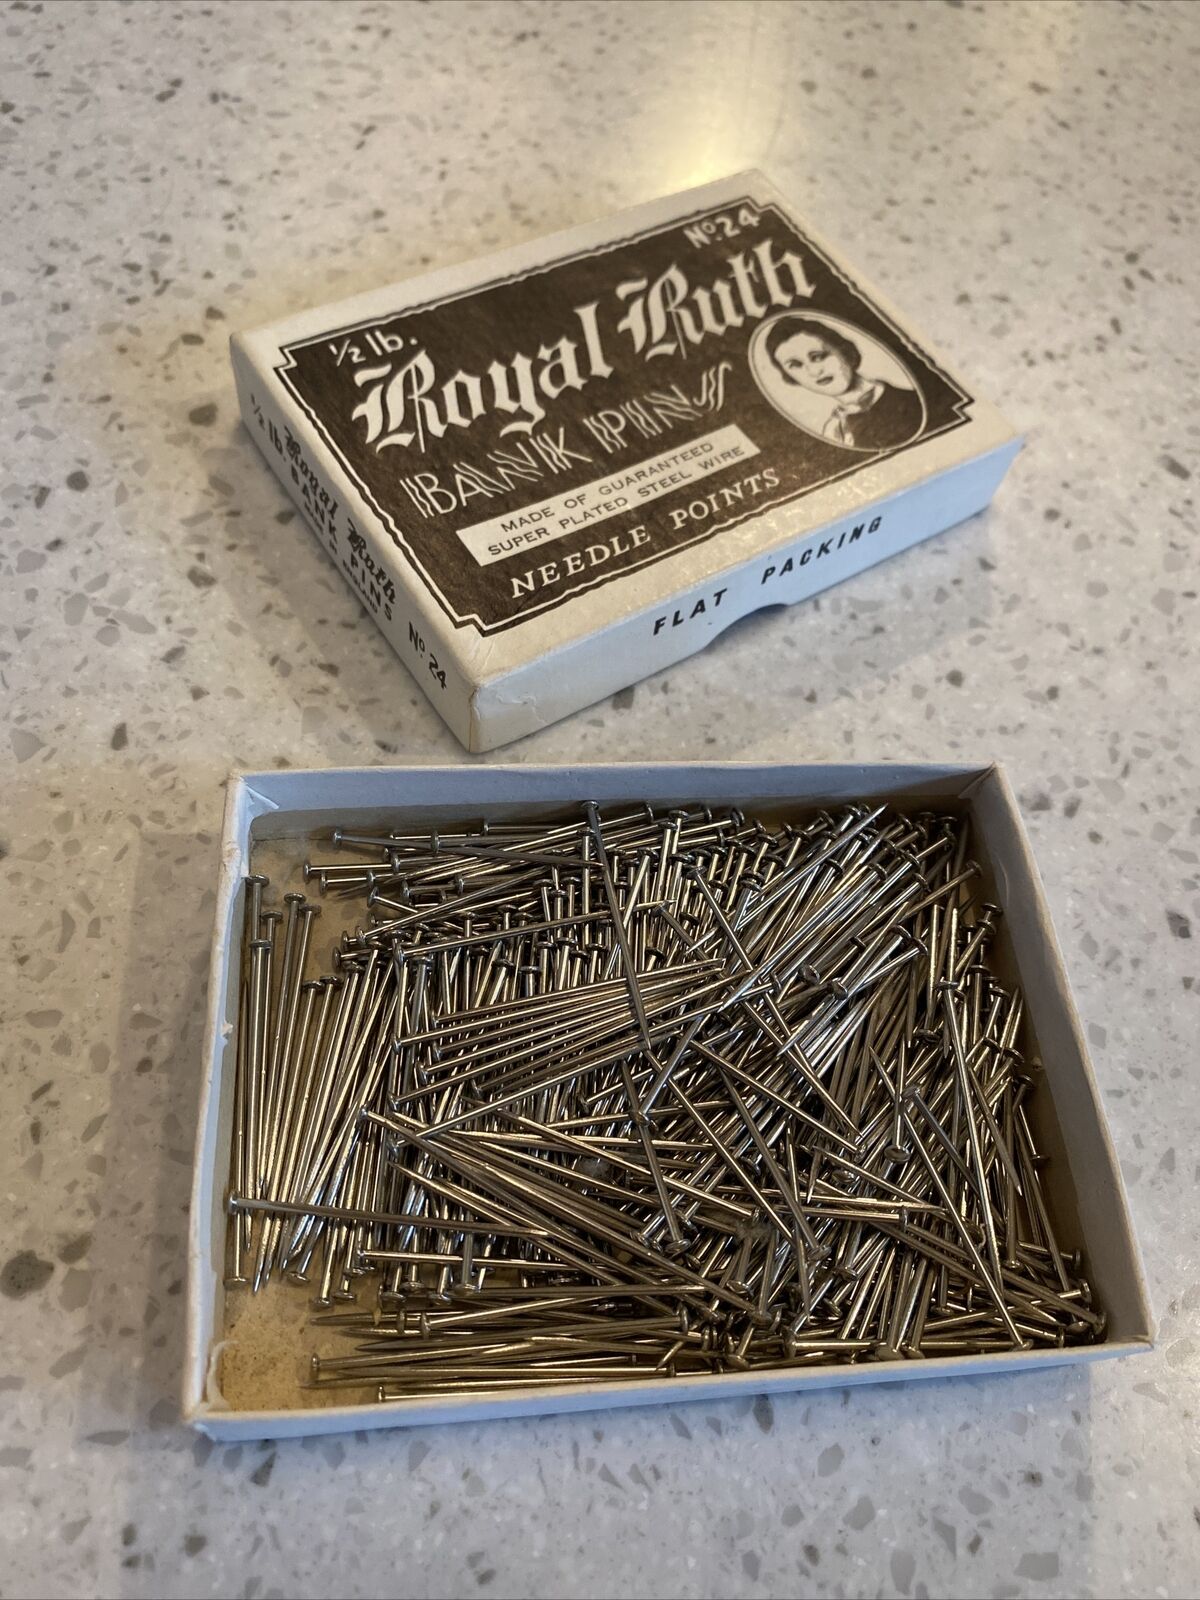 Royal Ruth Steel Bank Pins 1/2 Lb Box, #24 No 24 1.5" Long Needle Points England